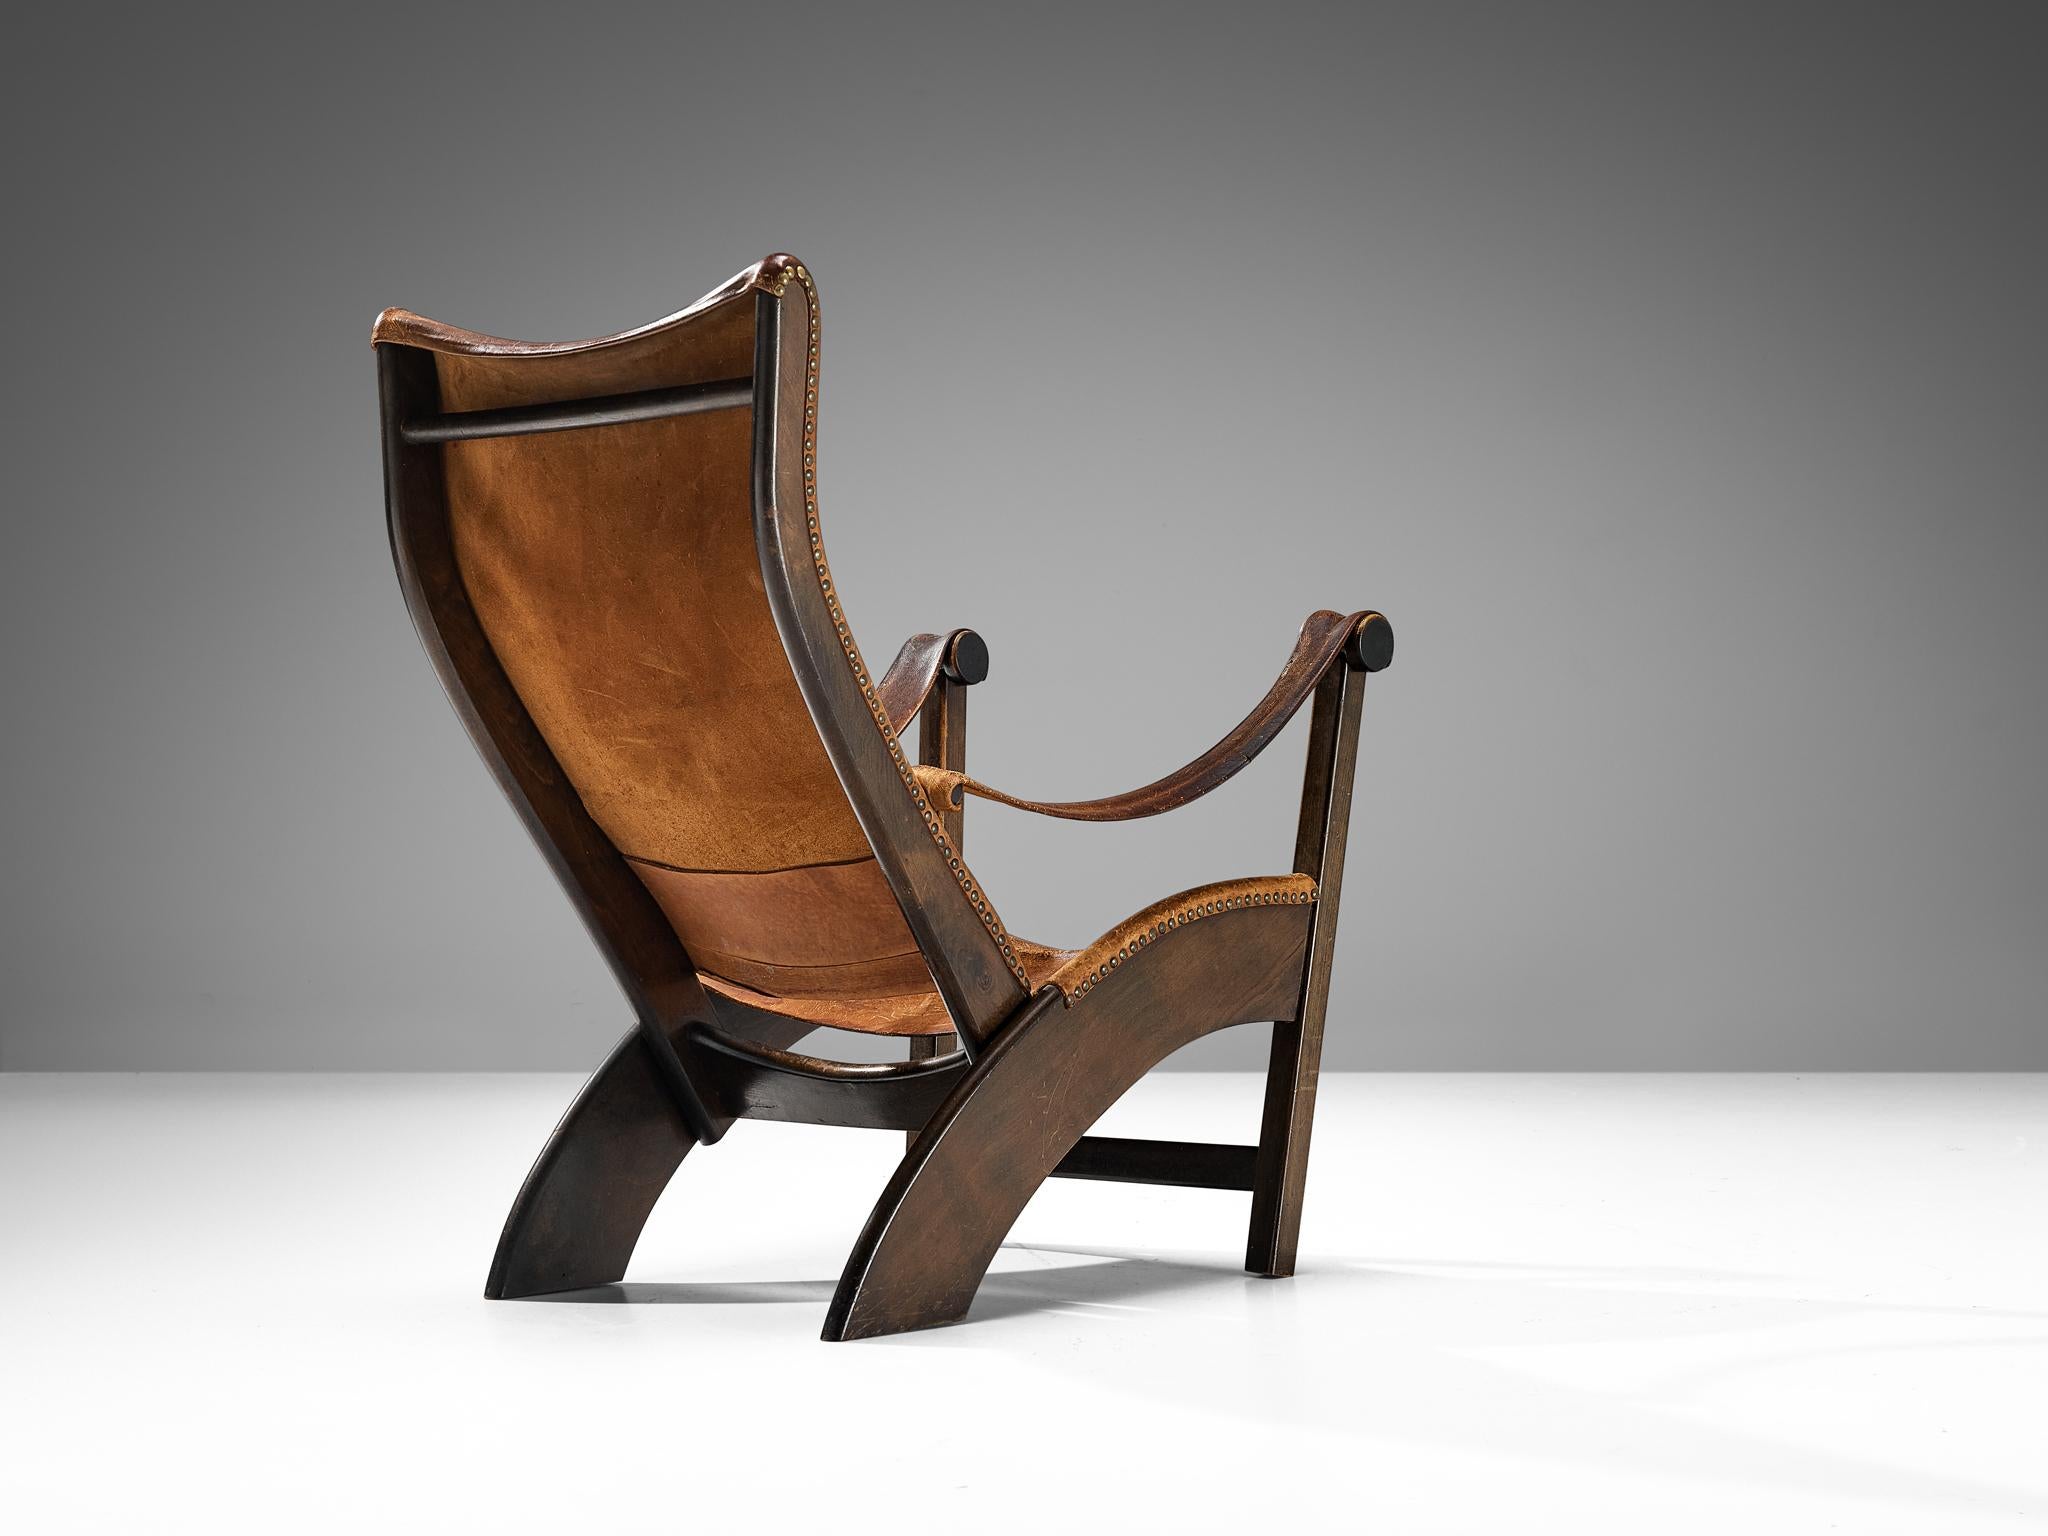 Mogens Voltelen pour Niels Vodder, chaise longue modèle 'Copenhagen', hêtre, cuir patiné, laiton, Danemark, design 1936

La chaise longue 